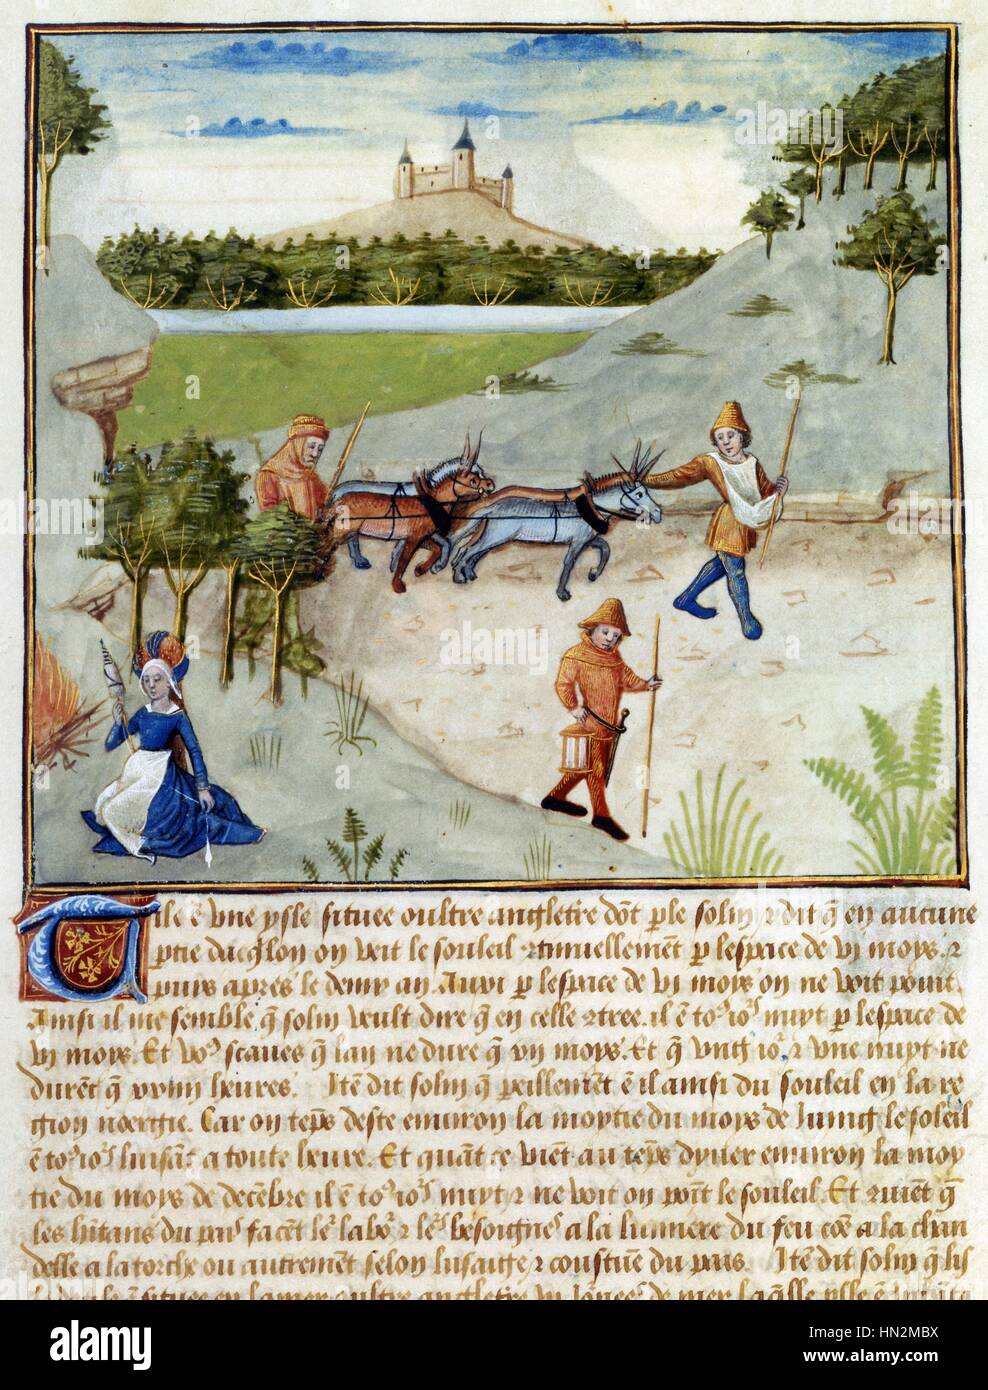 Manuskript-Anthologie der "Hystoires de Troyes" komponiert von Raoul Le Feure für Philipp von Burgund. Szene des Lebens auf dem Lande Frankreich 15. Jahrhundert Stockfoto